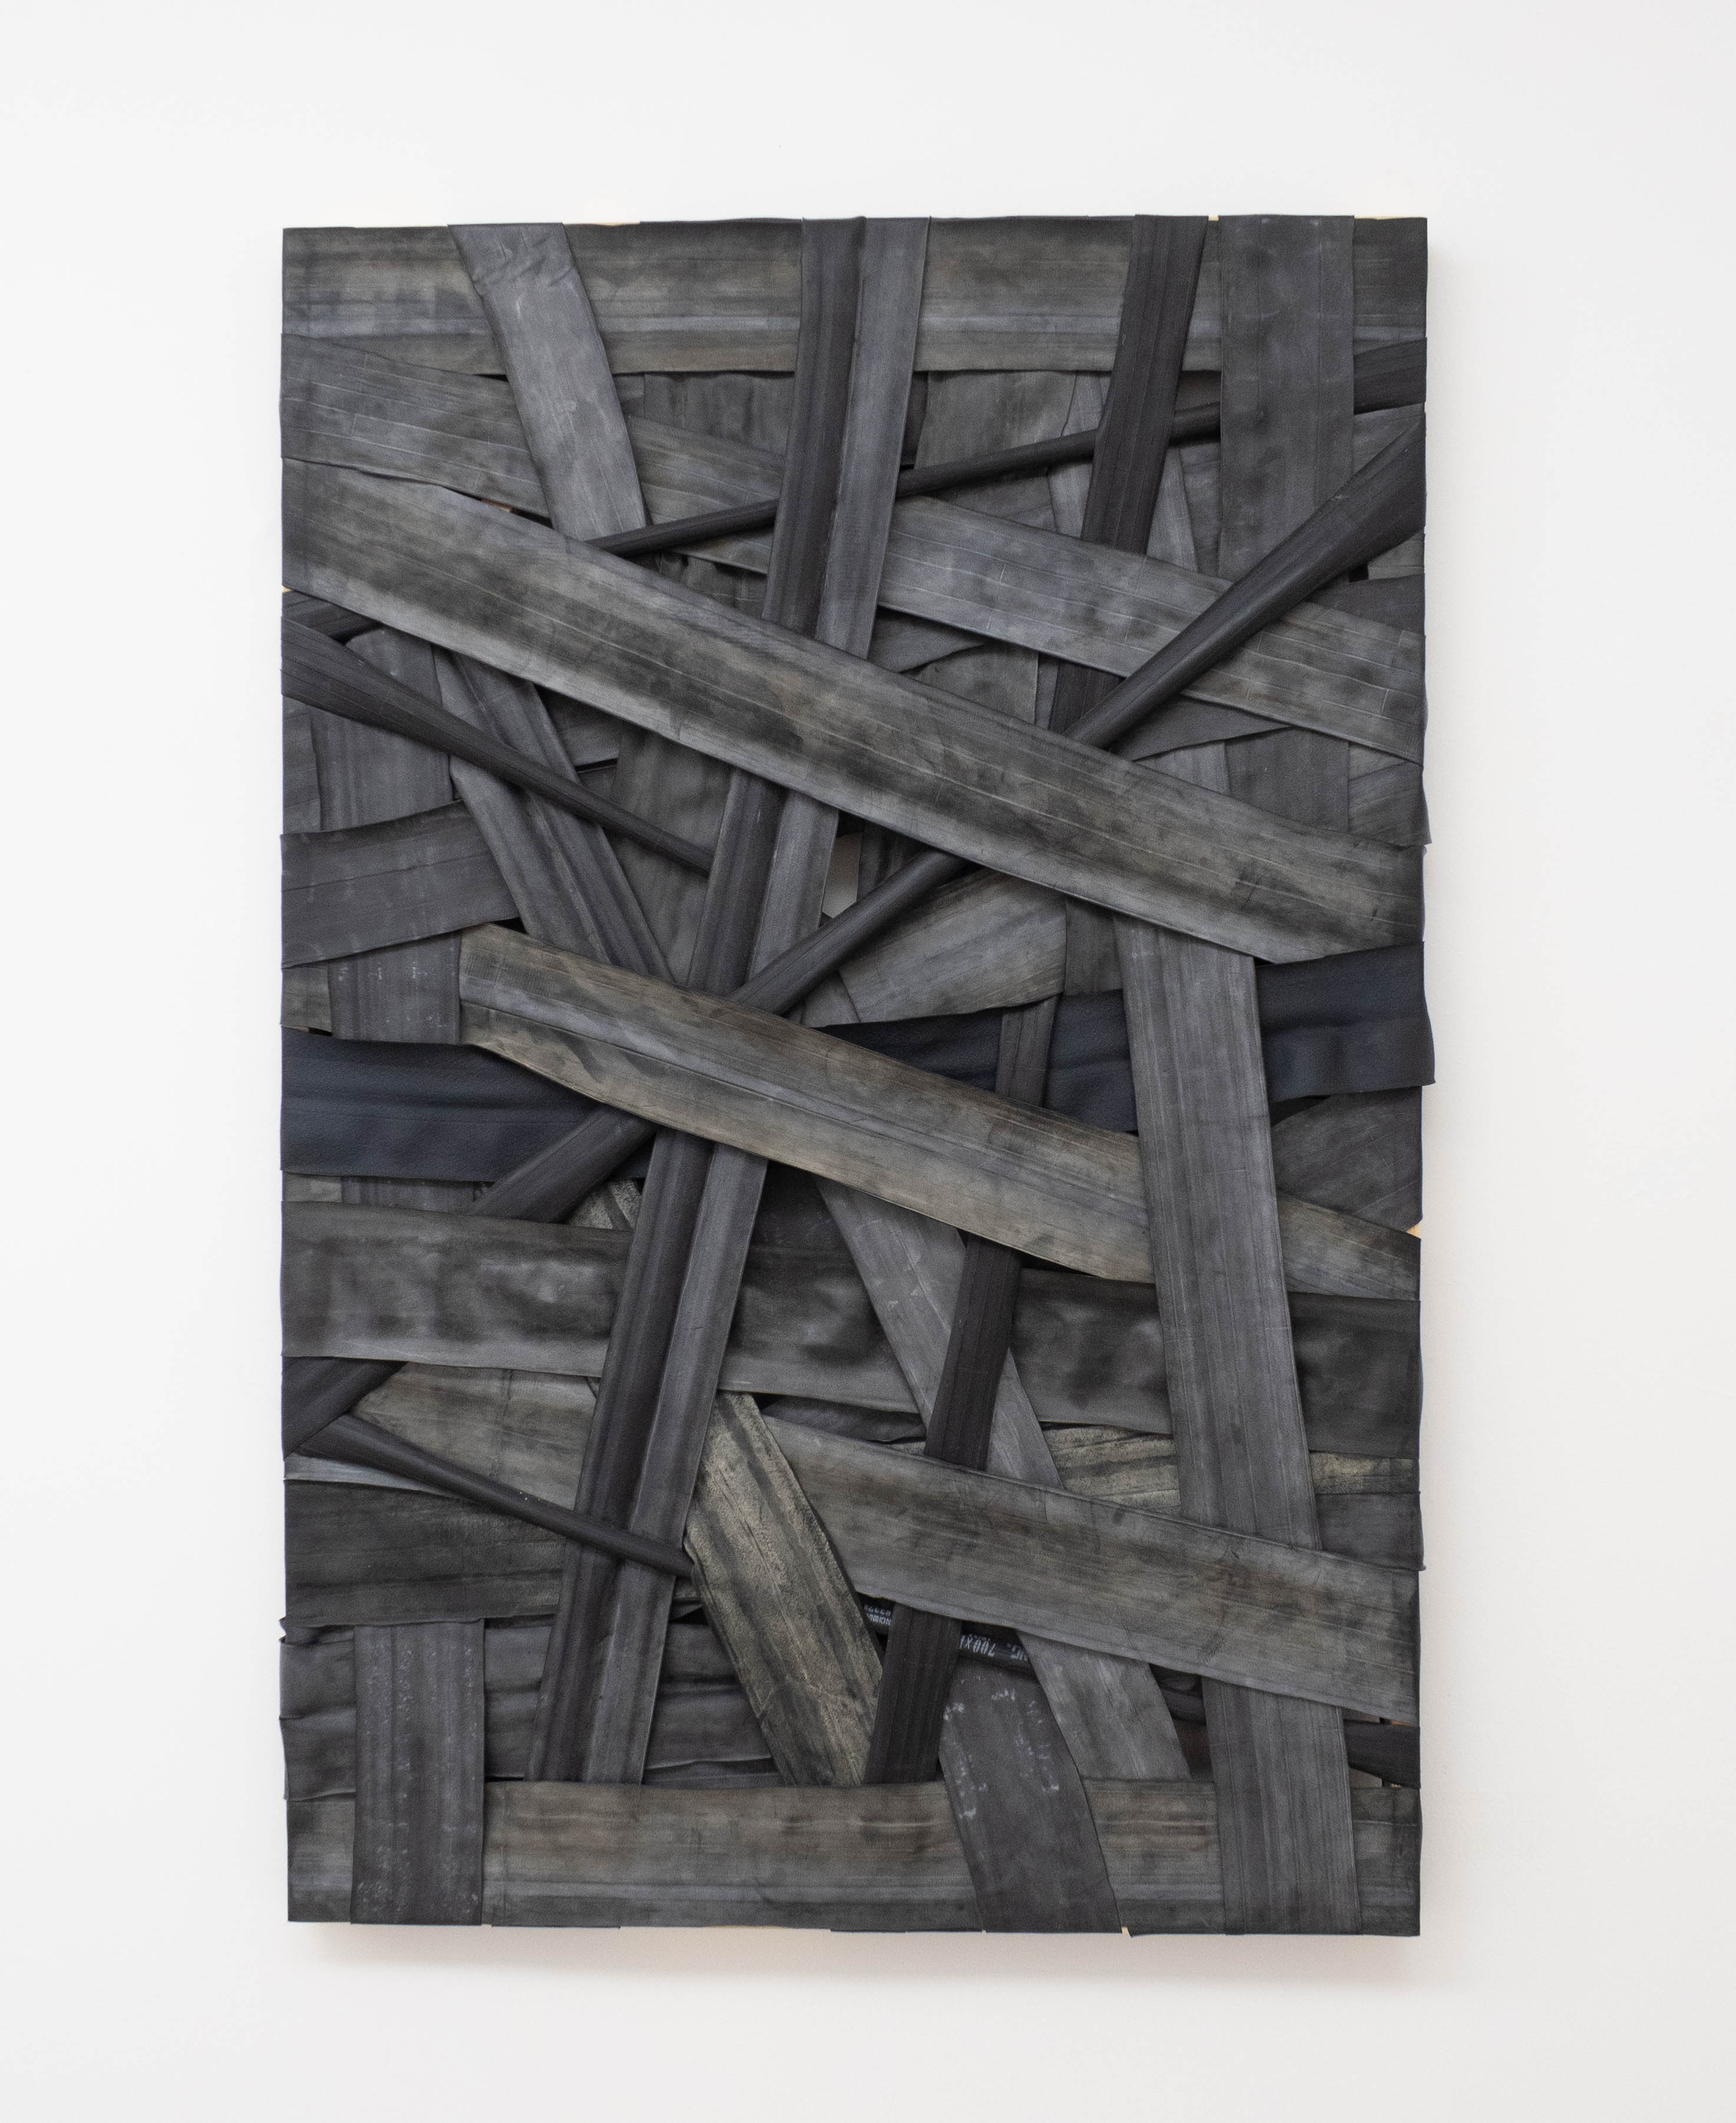 Fernando Soares, Colônia 28, Borracha sobre chassi de madeira, 120 x 80 cm, 2019